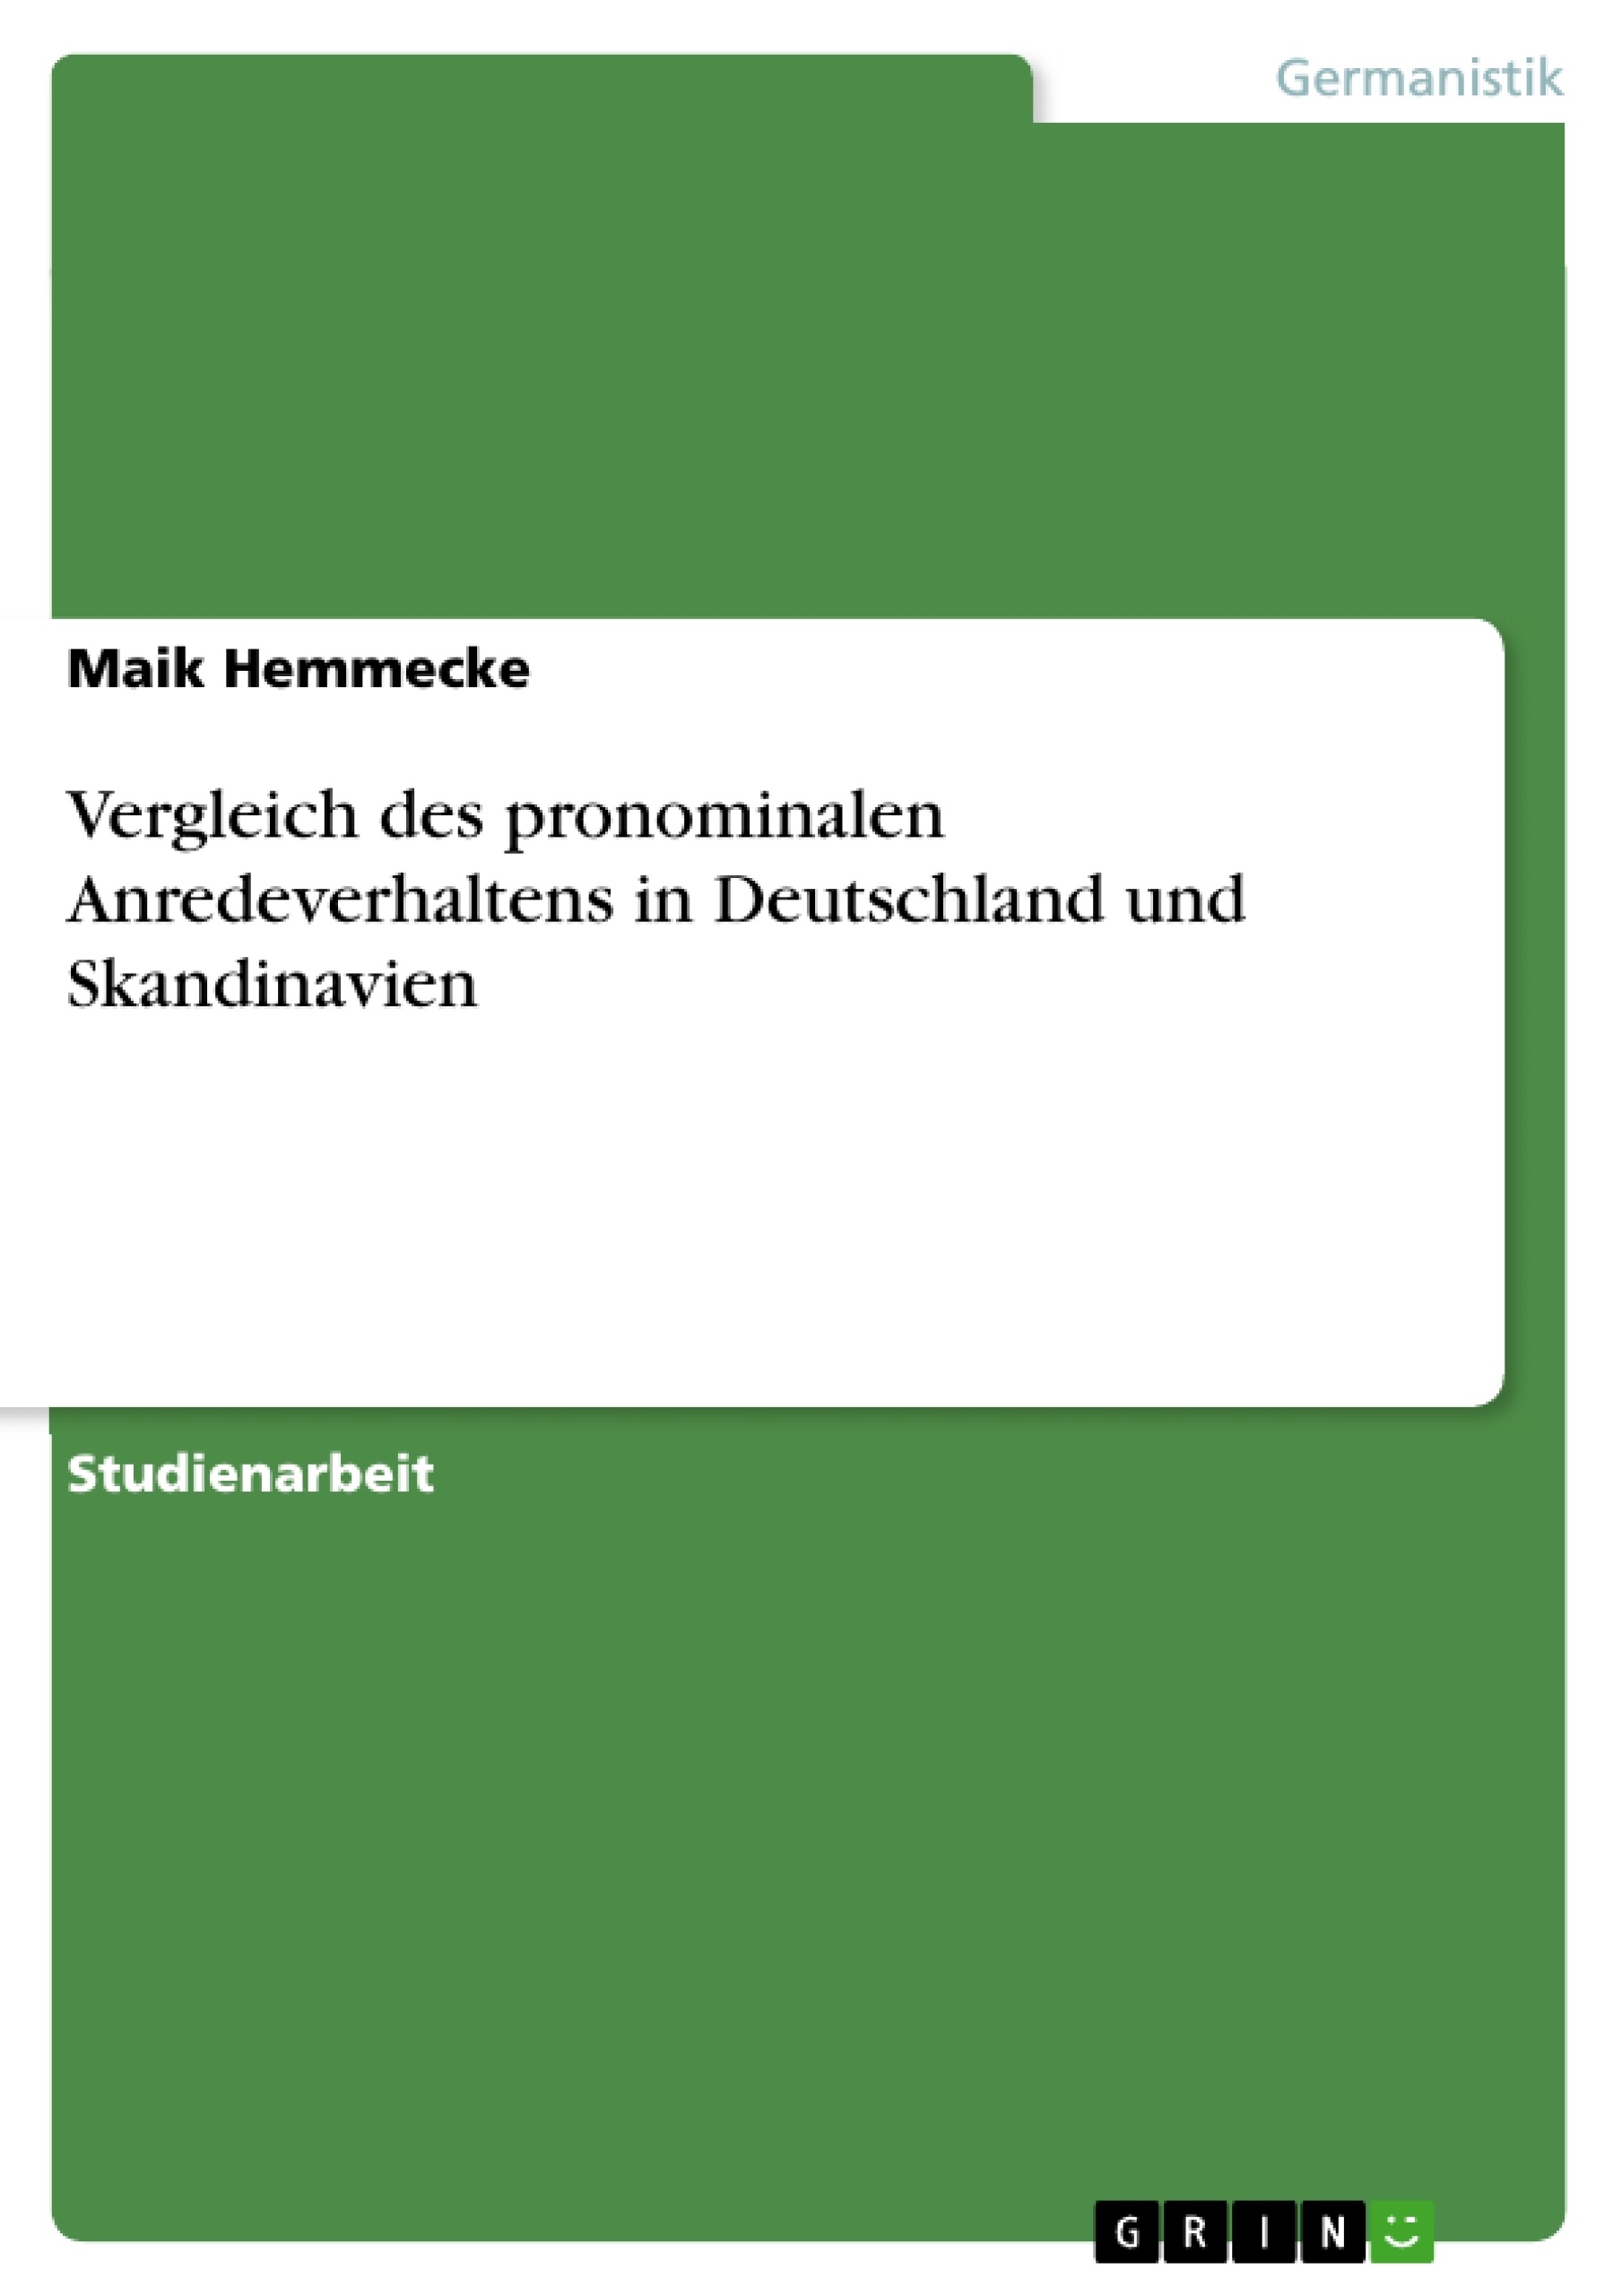 Title: Vergleich des pronominalen Anredeverhaltens in Deutschland und Skandinavien